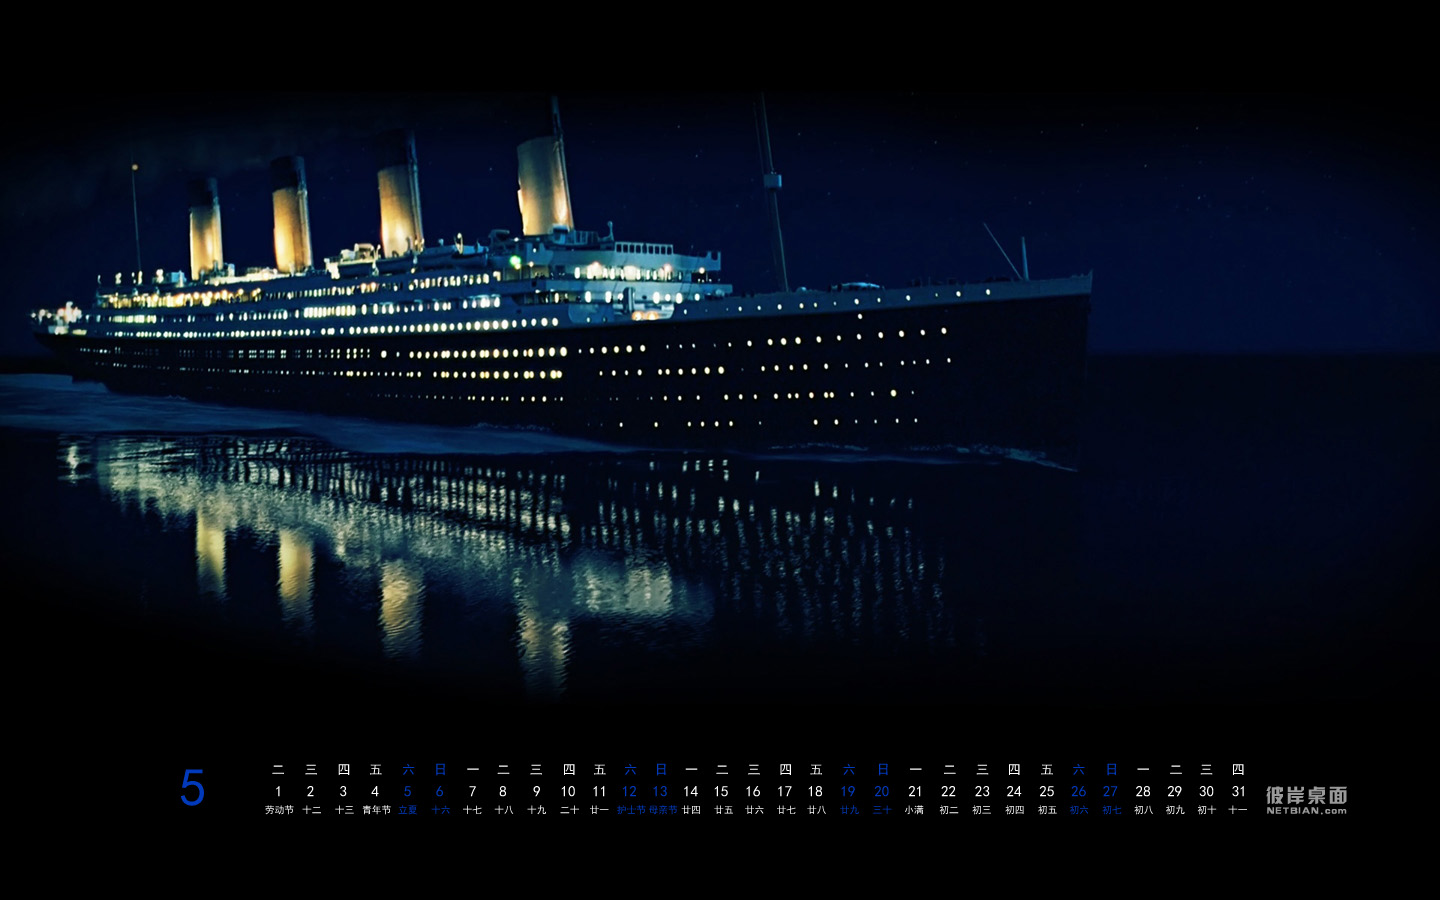 25周年经典神作:《泰坦尼克号》3D 4K HDR重制版明年重映 - 电影 - cnBeta.COM